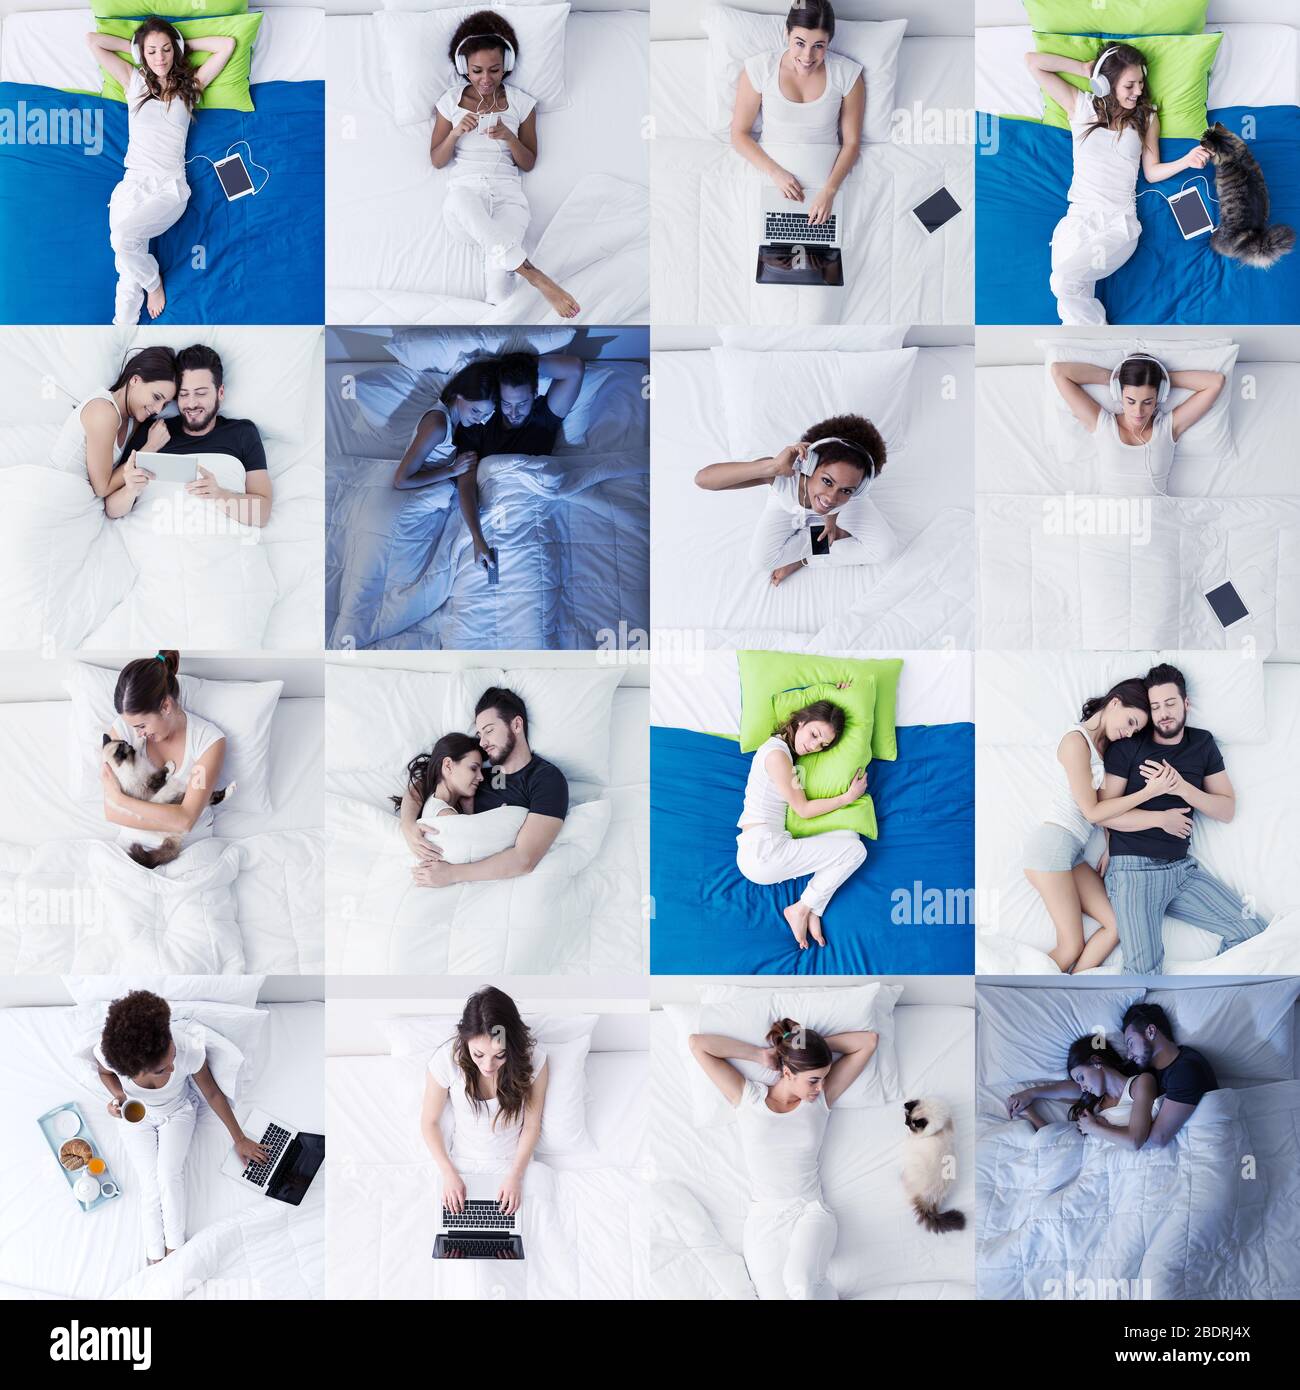 Les gens et le style de vie de la chambre: Les gens qui se trouvent dans le lit, dormir, se connecter et se détendre, images mosaïque ensemble Banque D'Images